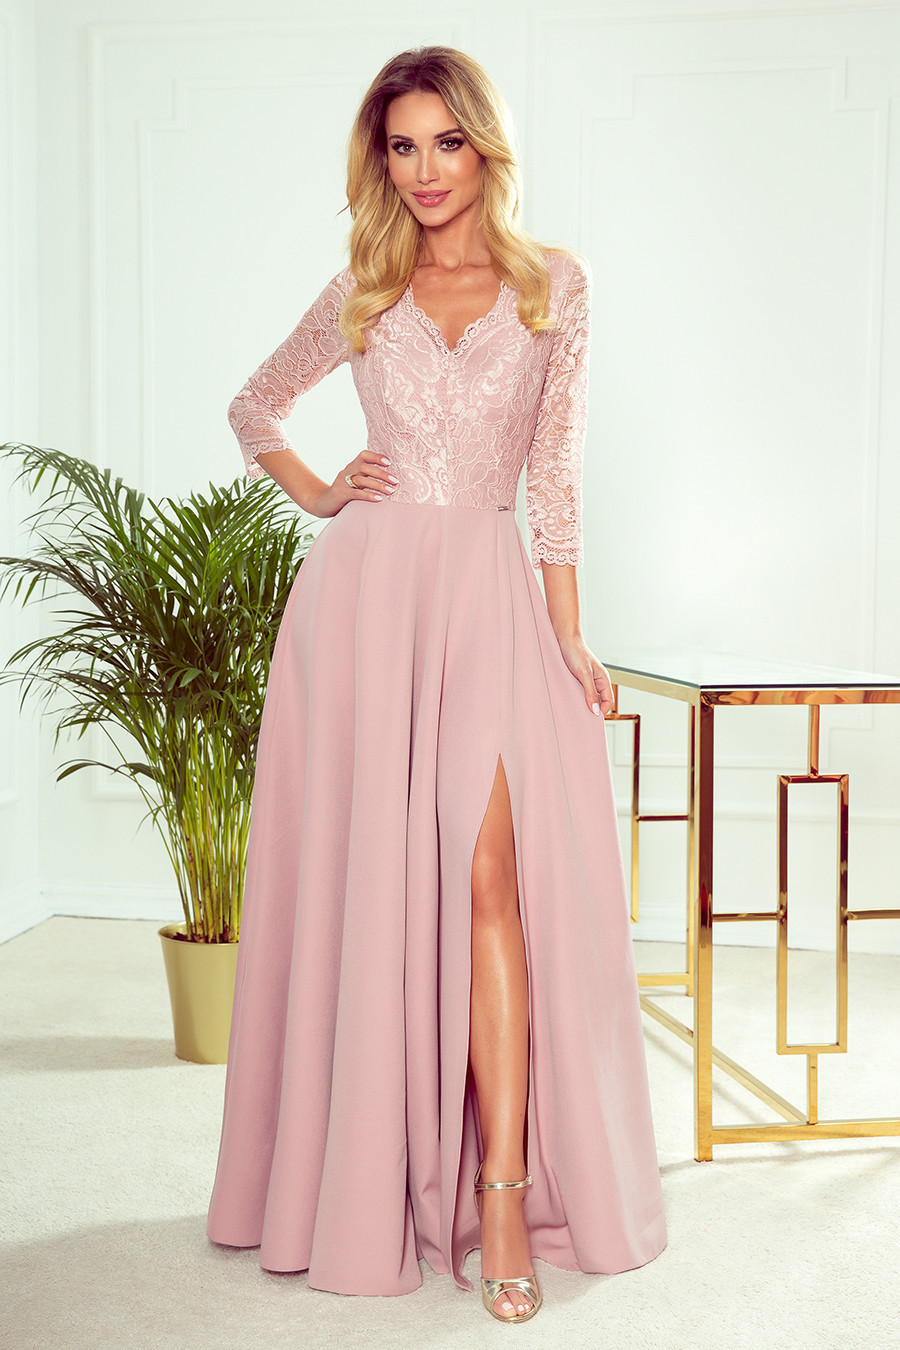 AMBER - Elegantní dlouhé krajkové dámské šaty v pudrově růžové barvě s dekoltem 309-4 S